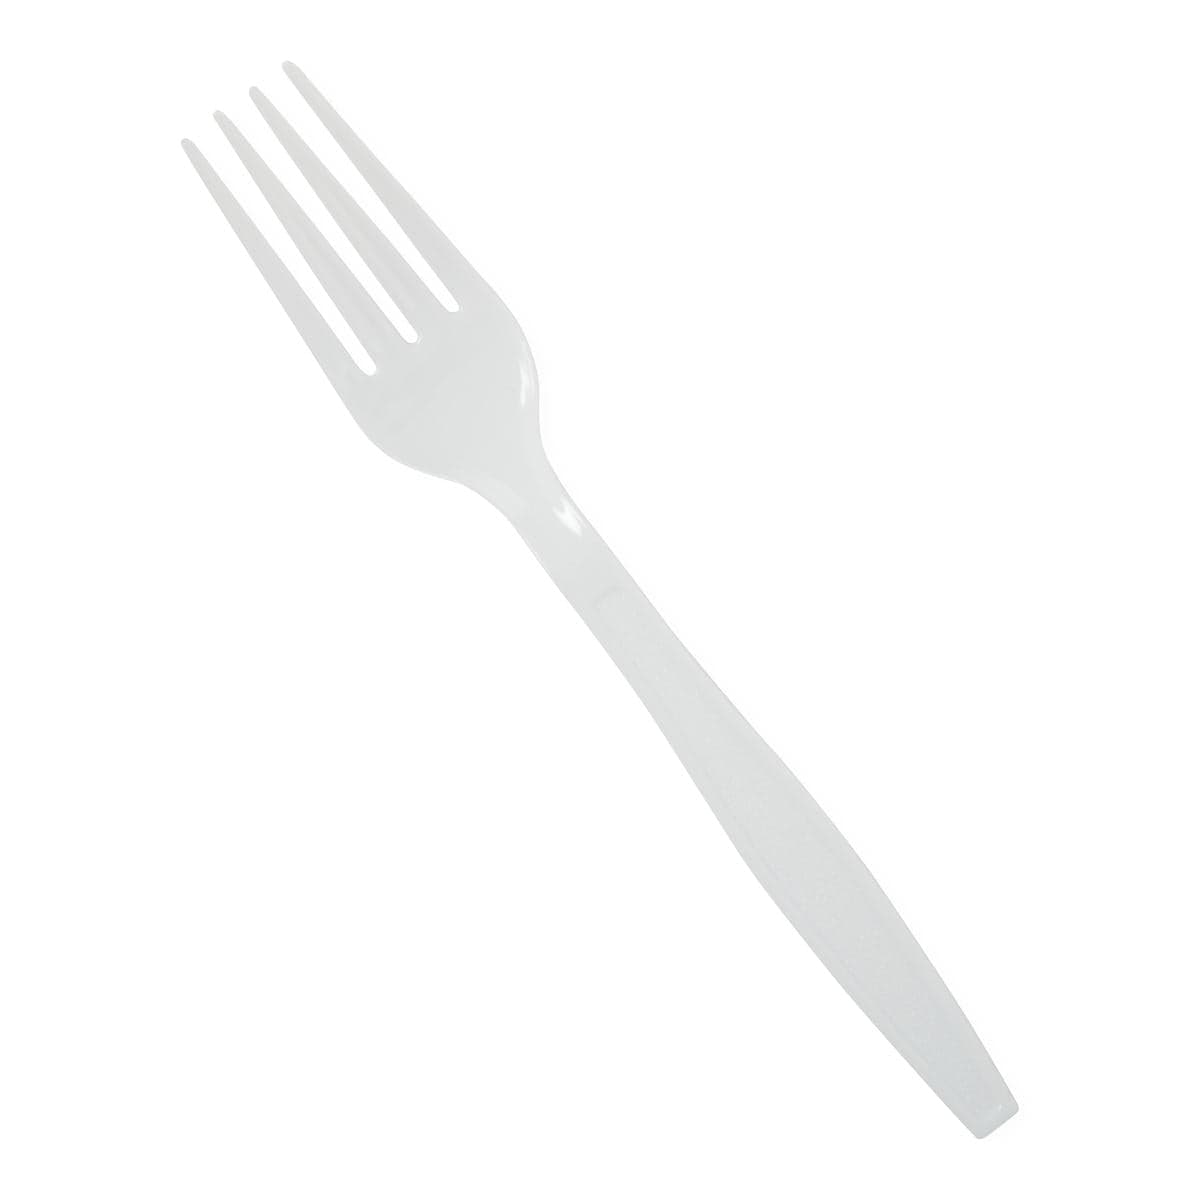 Medline Medline Disposable White Plastic Forks